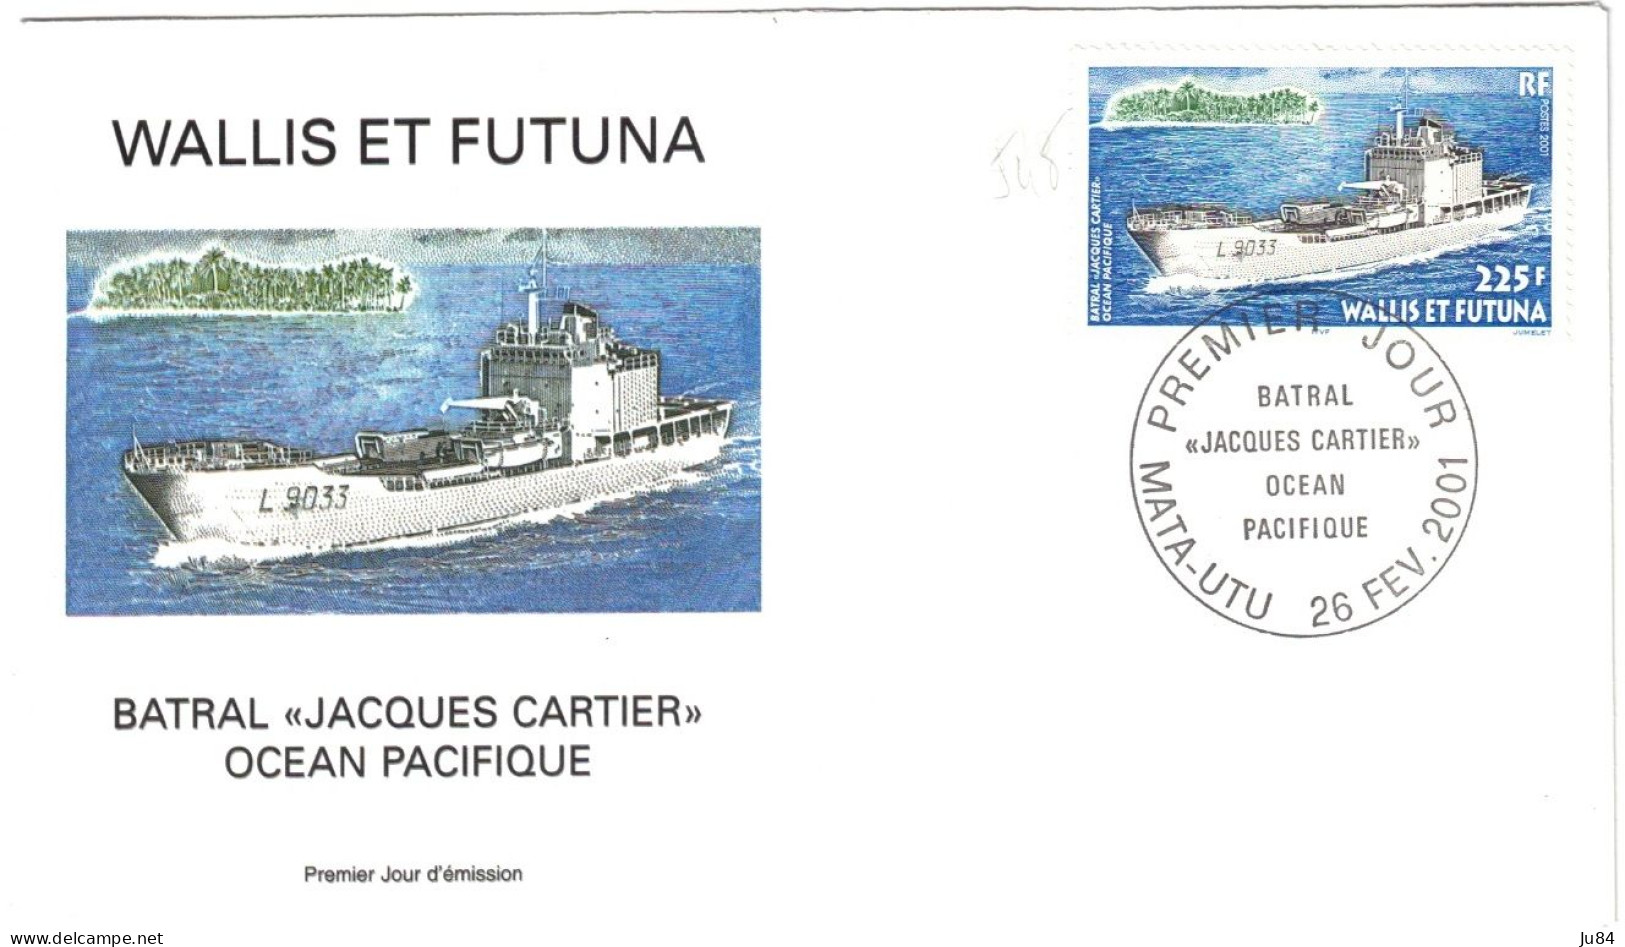 Océanie - Wallis Et Futuna - Mata-Utu - Batral "Jacques Cartier" Océan Pacifique - 26 Février 2001 - Covers & Documents